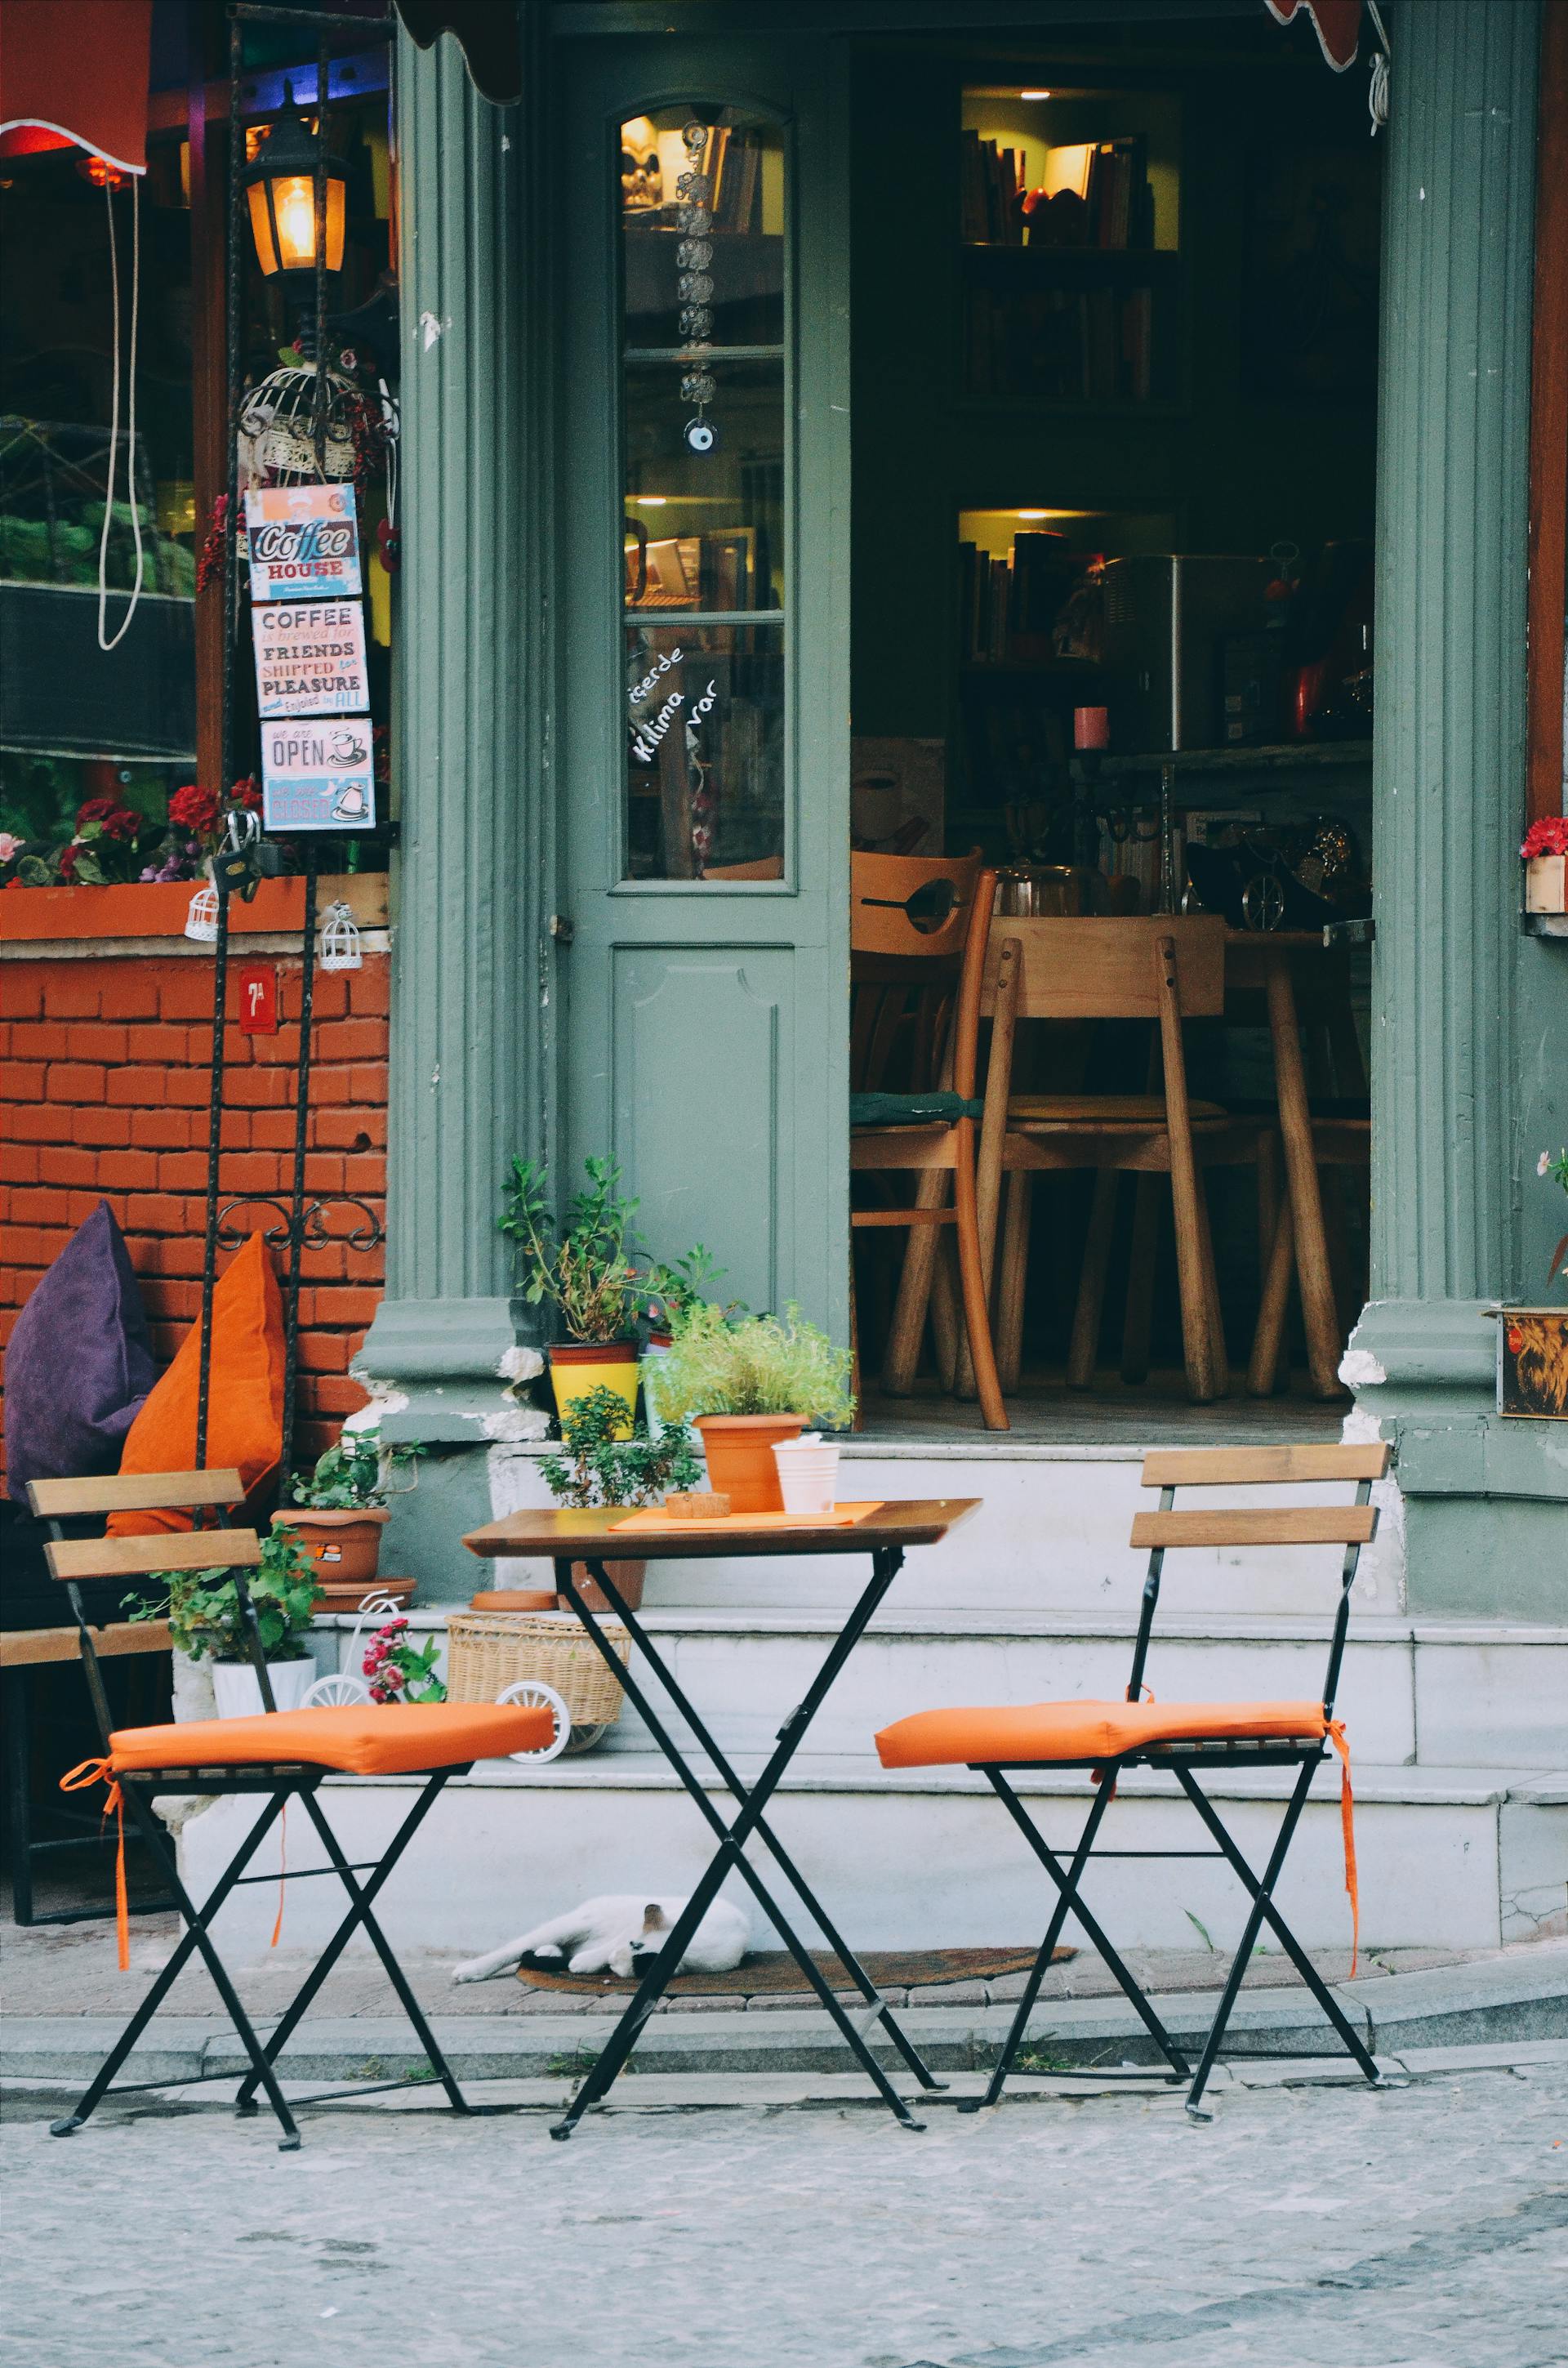 Eine dreiteilige braune und orangefarbene Terrassengarnitur vor einem Café | Quelle: Pexels